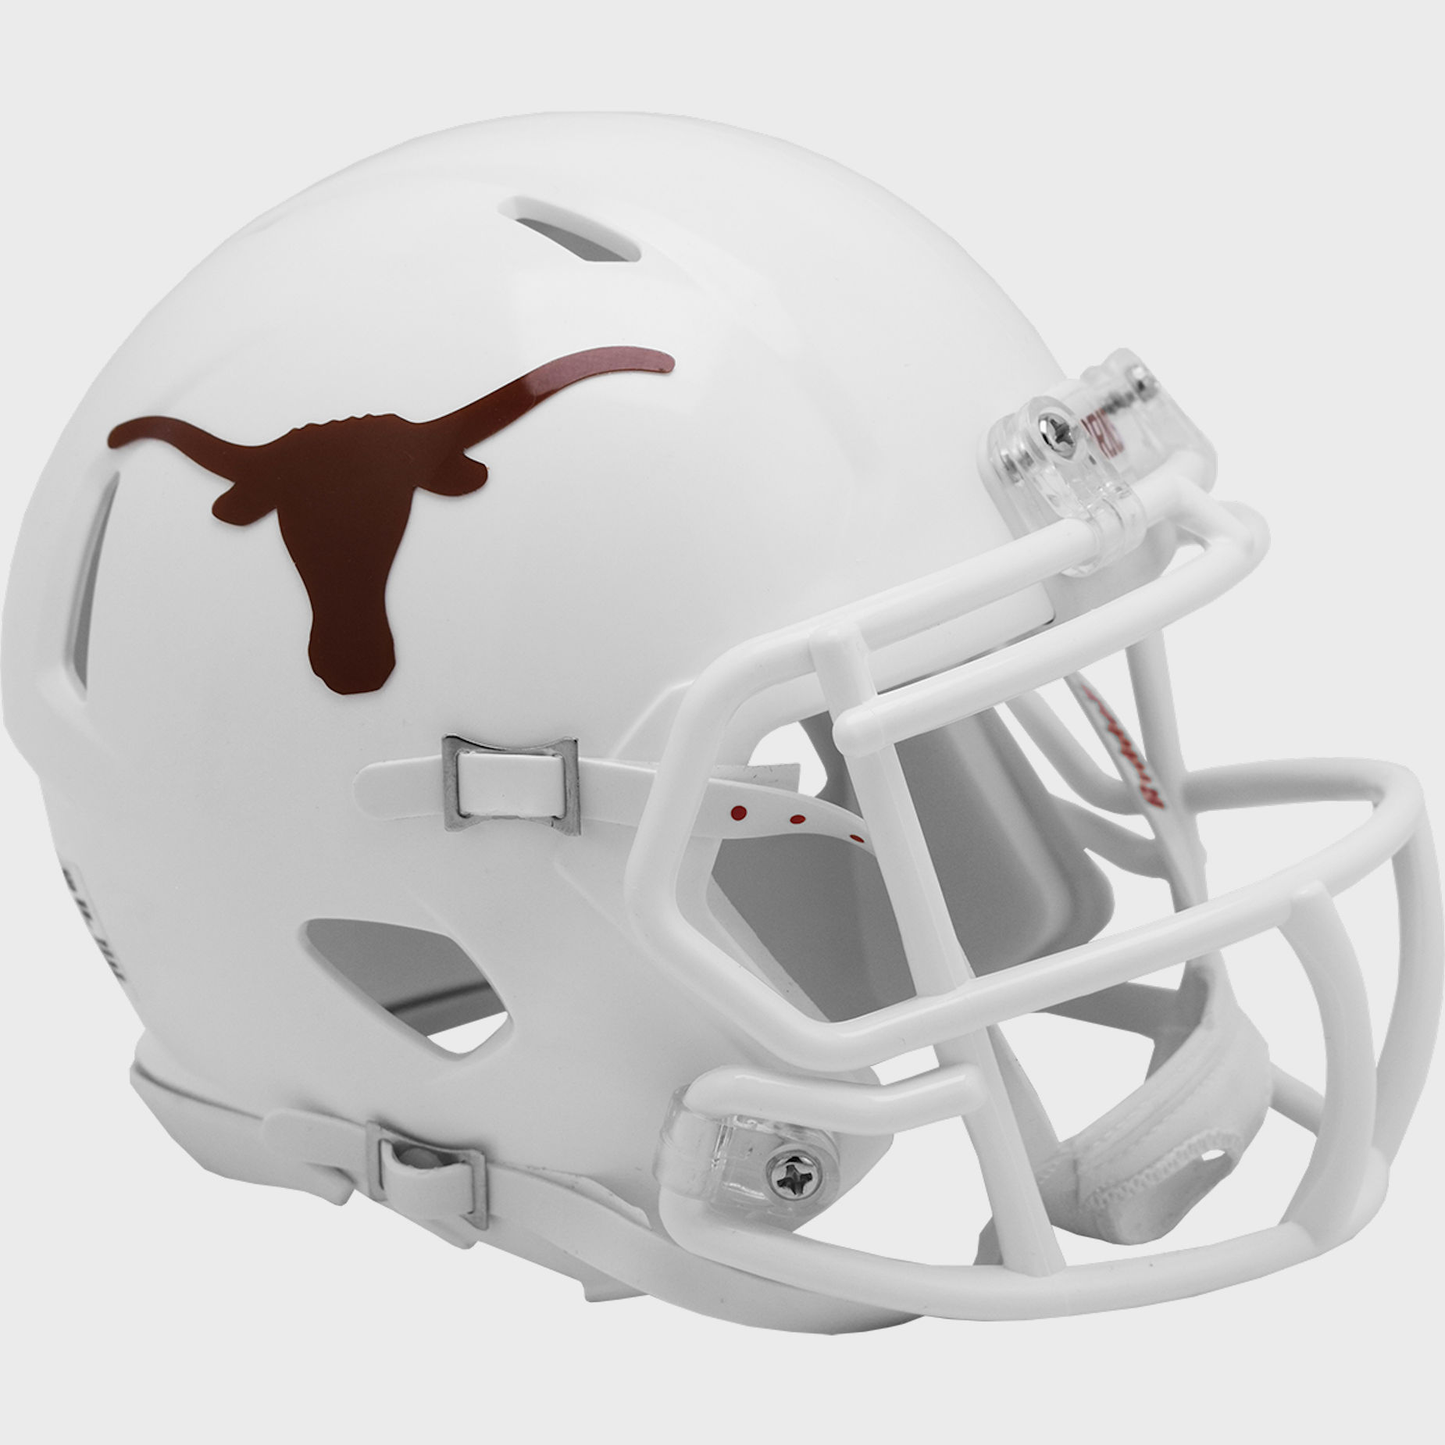 Texas Longhorns mini helmet